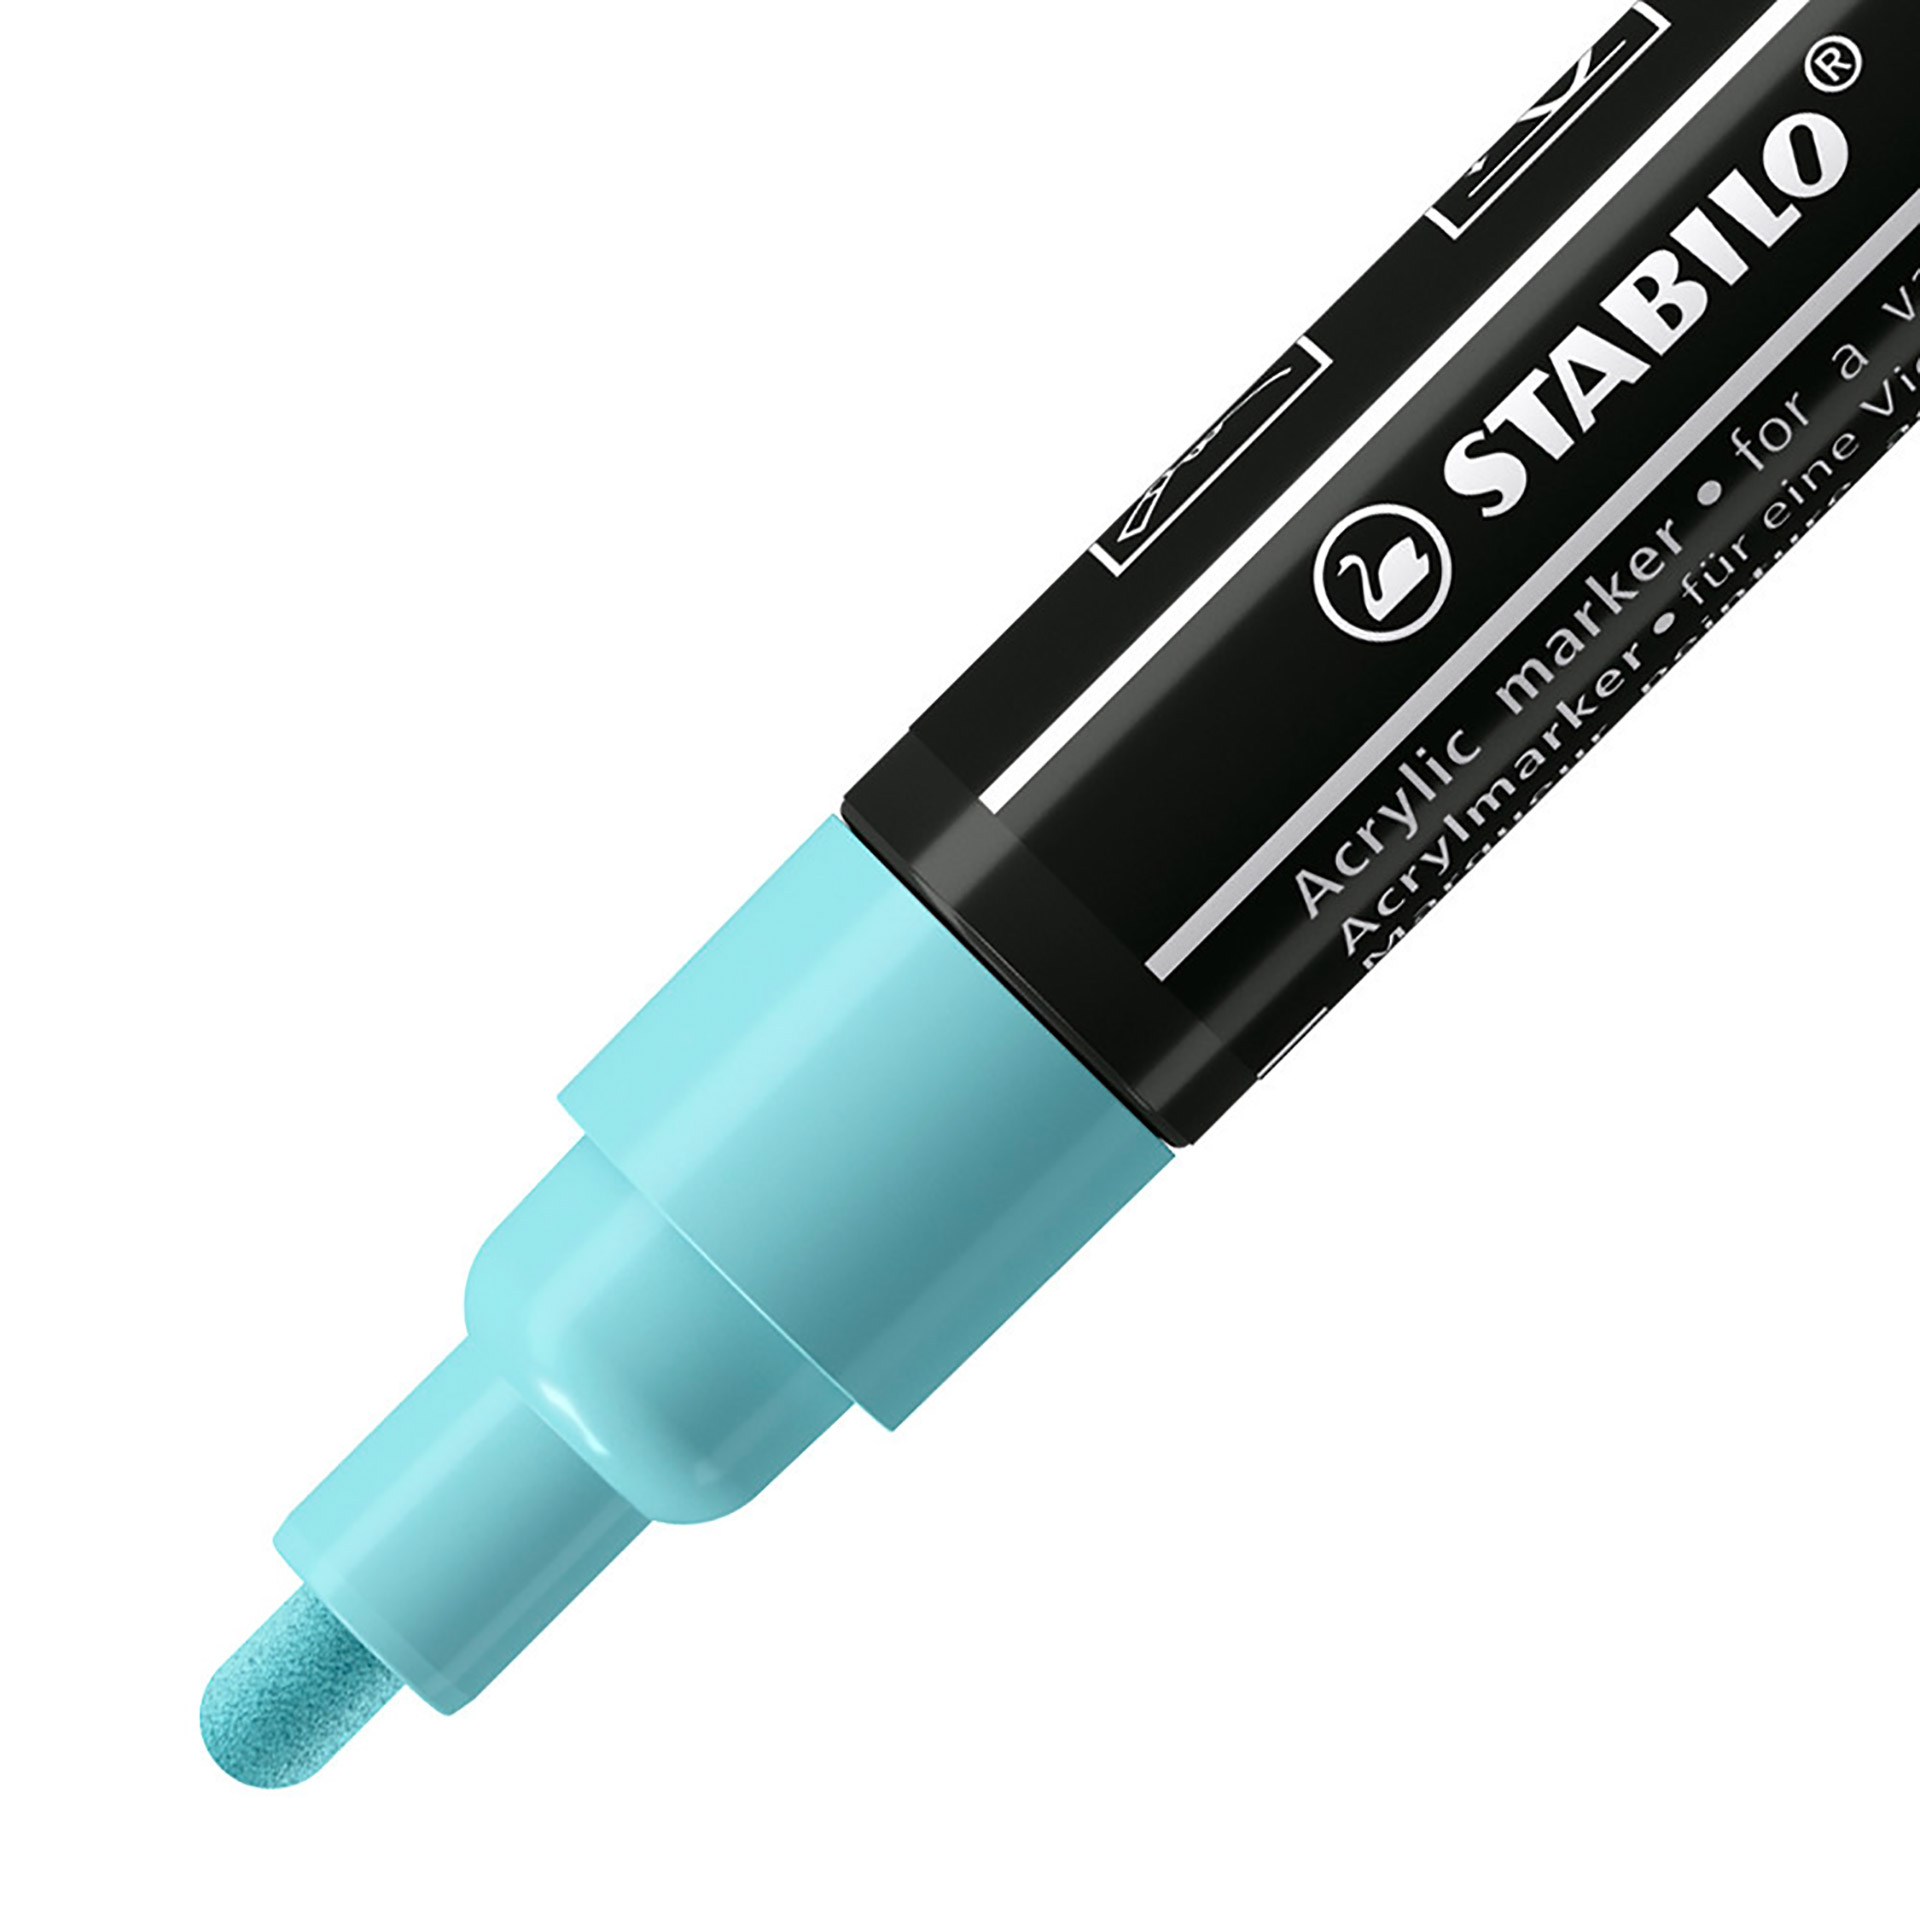 STABILO FREE Acrylic - T300 Punta rotonda 2-3mm - Confezione da 5 - Azzurro Ghia, , large